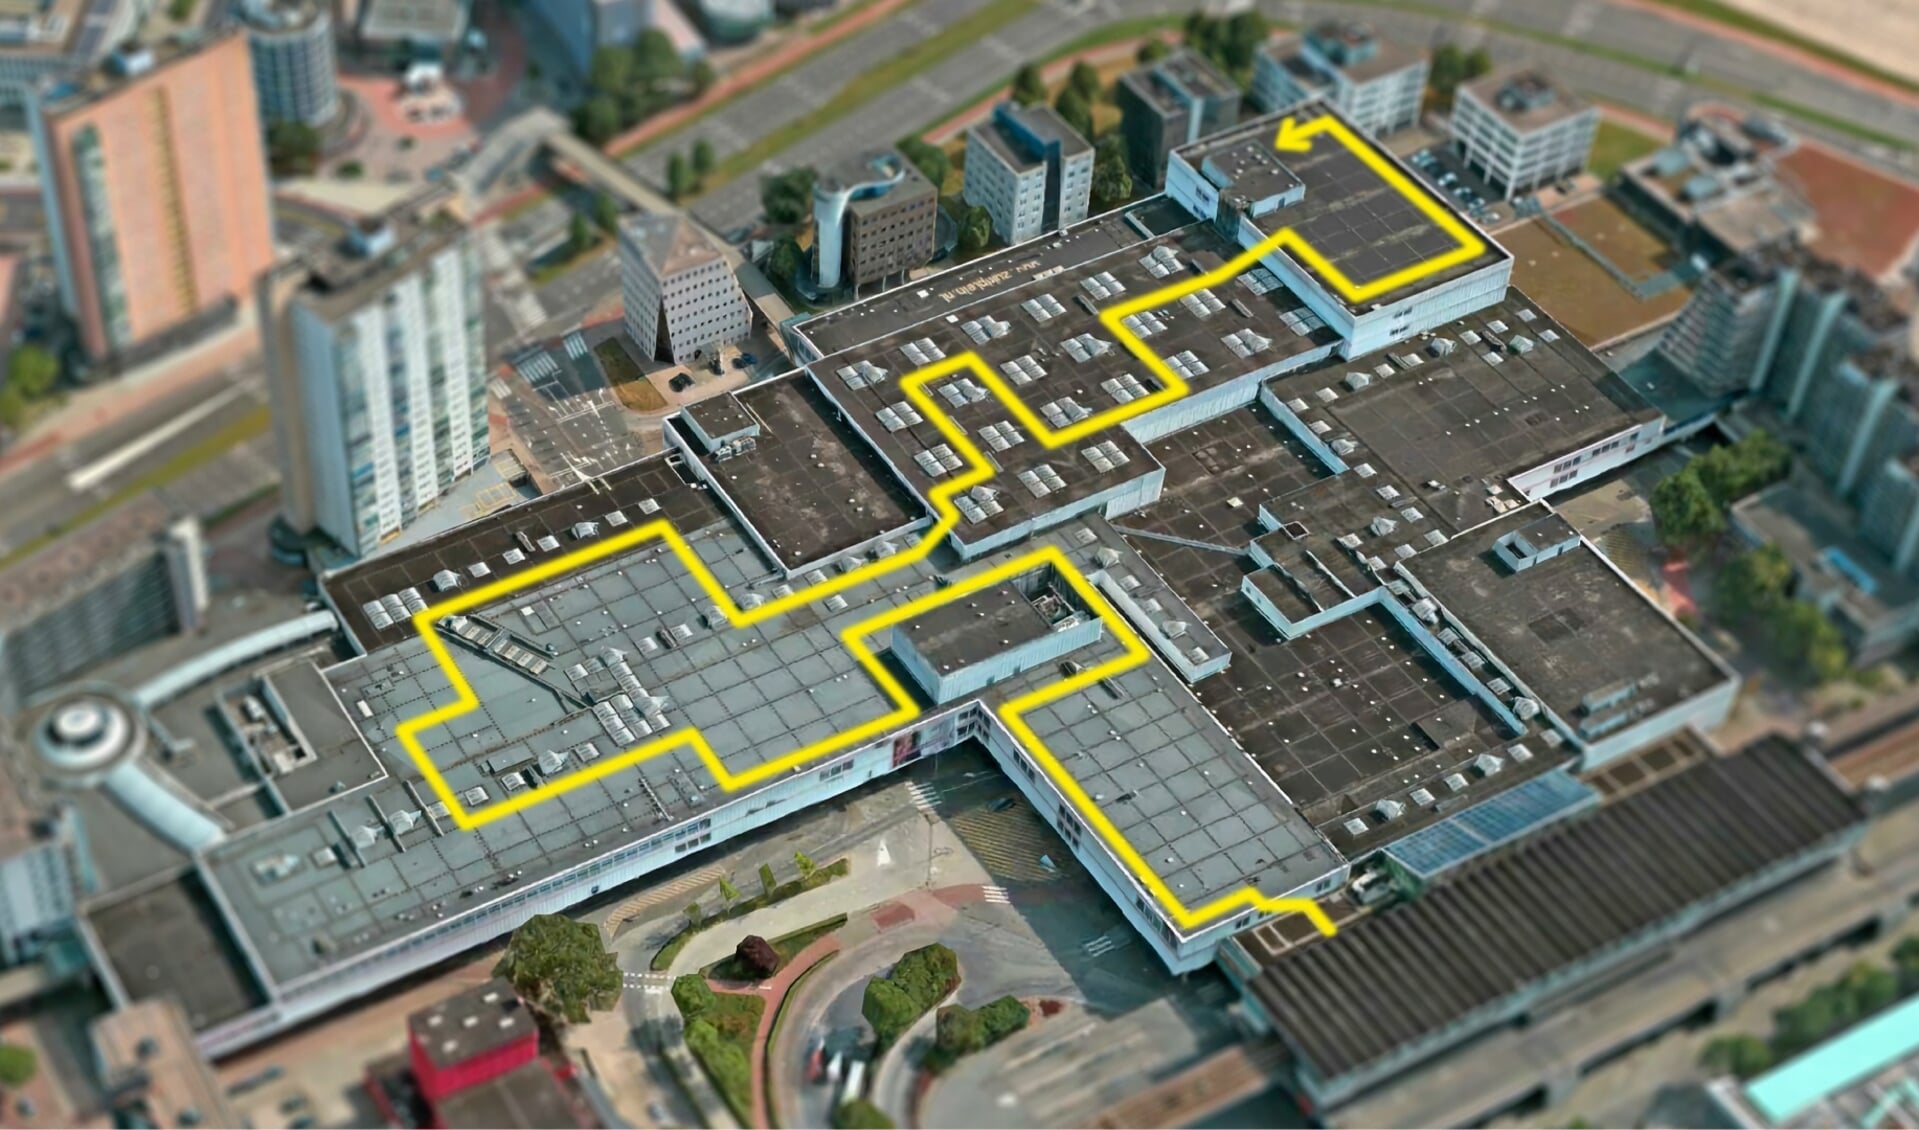 Het project Bovenop Zuid bestaat uit een knalgeel wandelpad van 850 meter over het dak van Zuidplein. Beeld: Rotterdamse Dakendagen